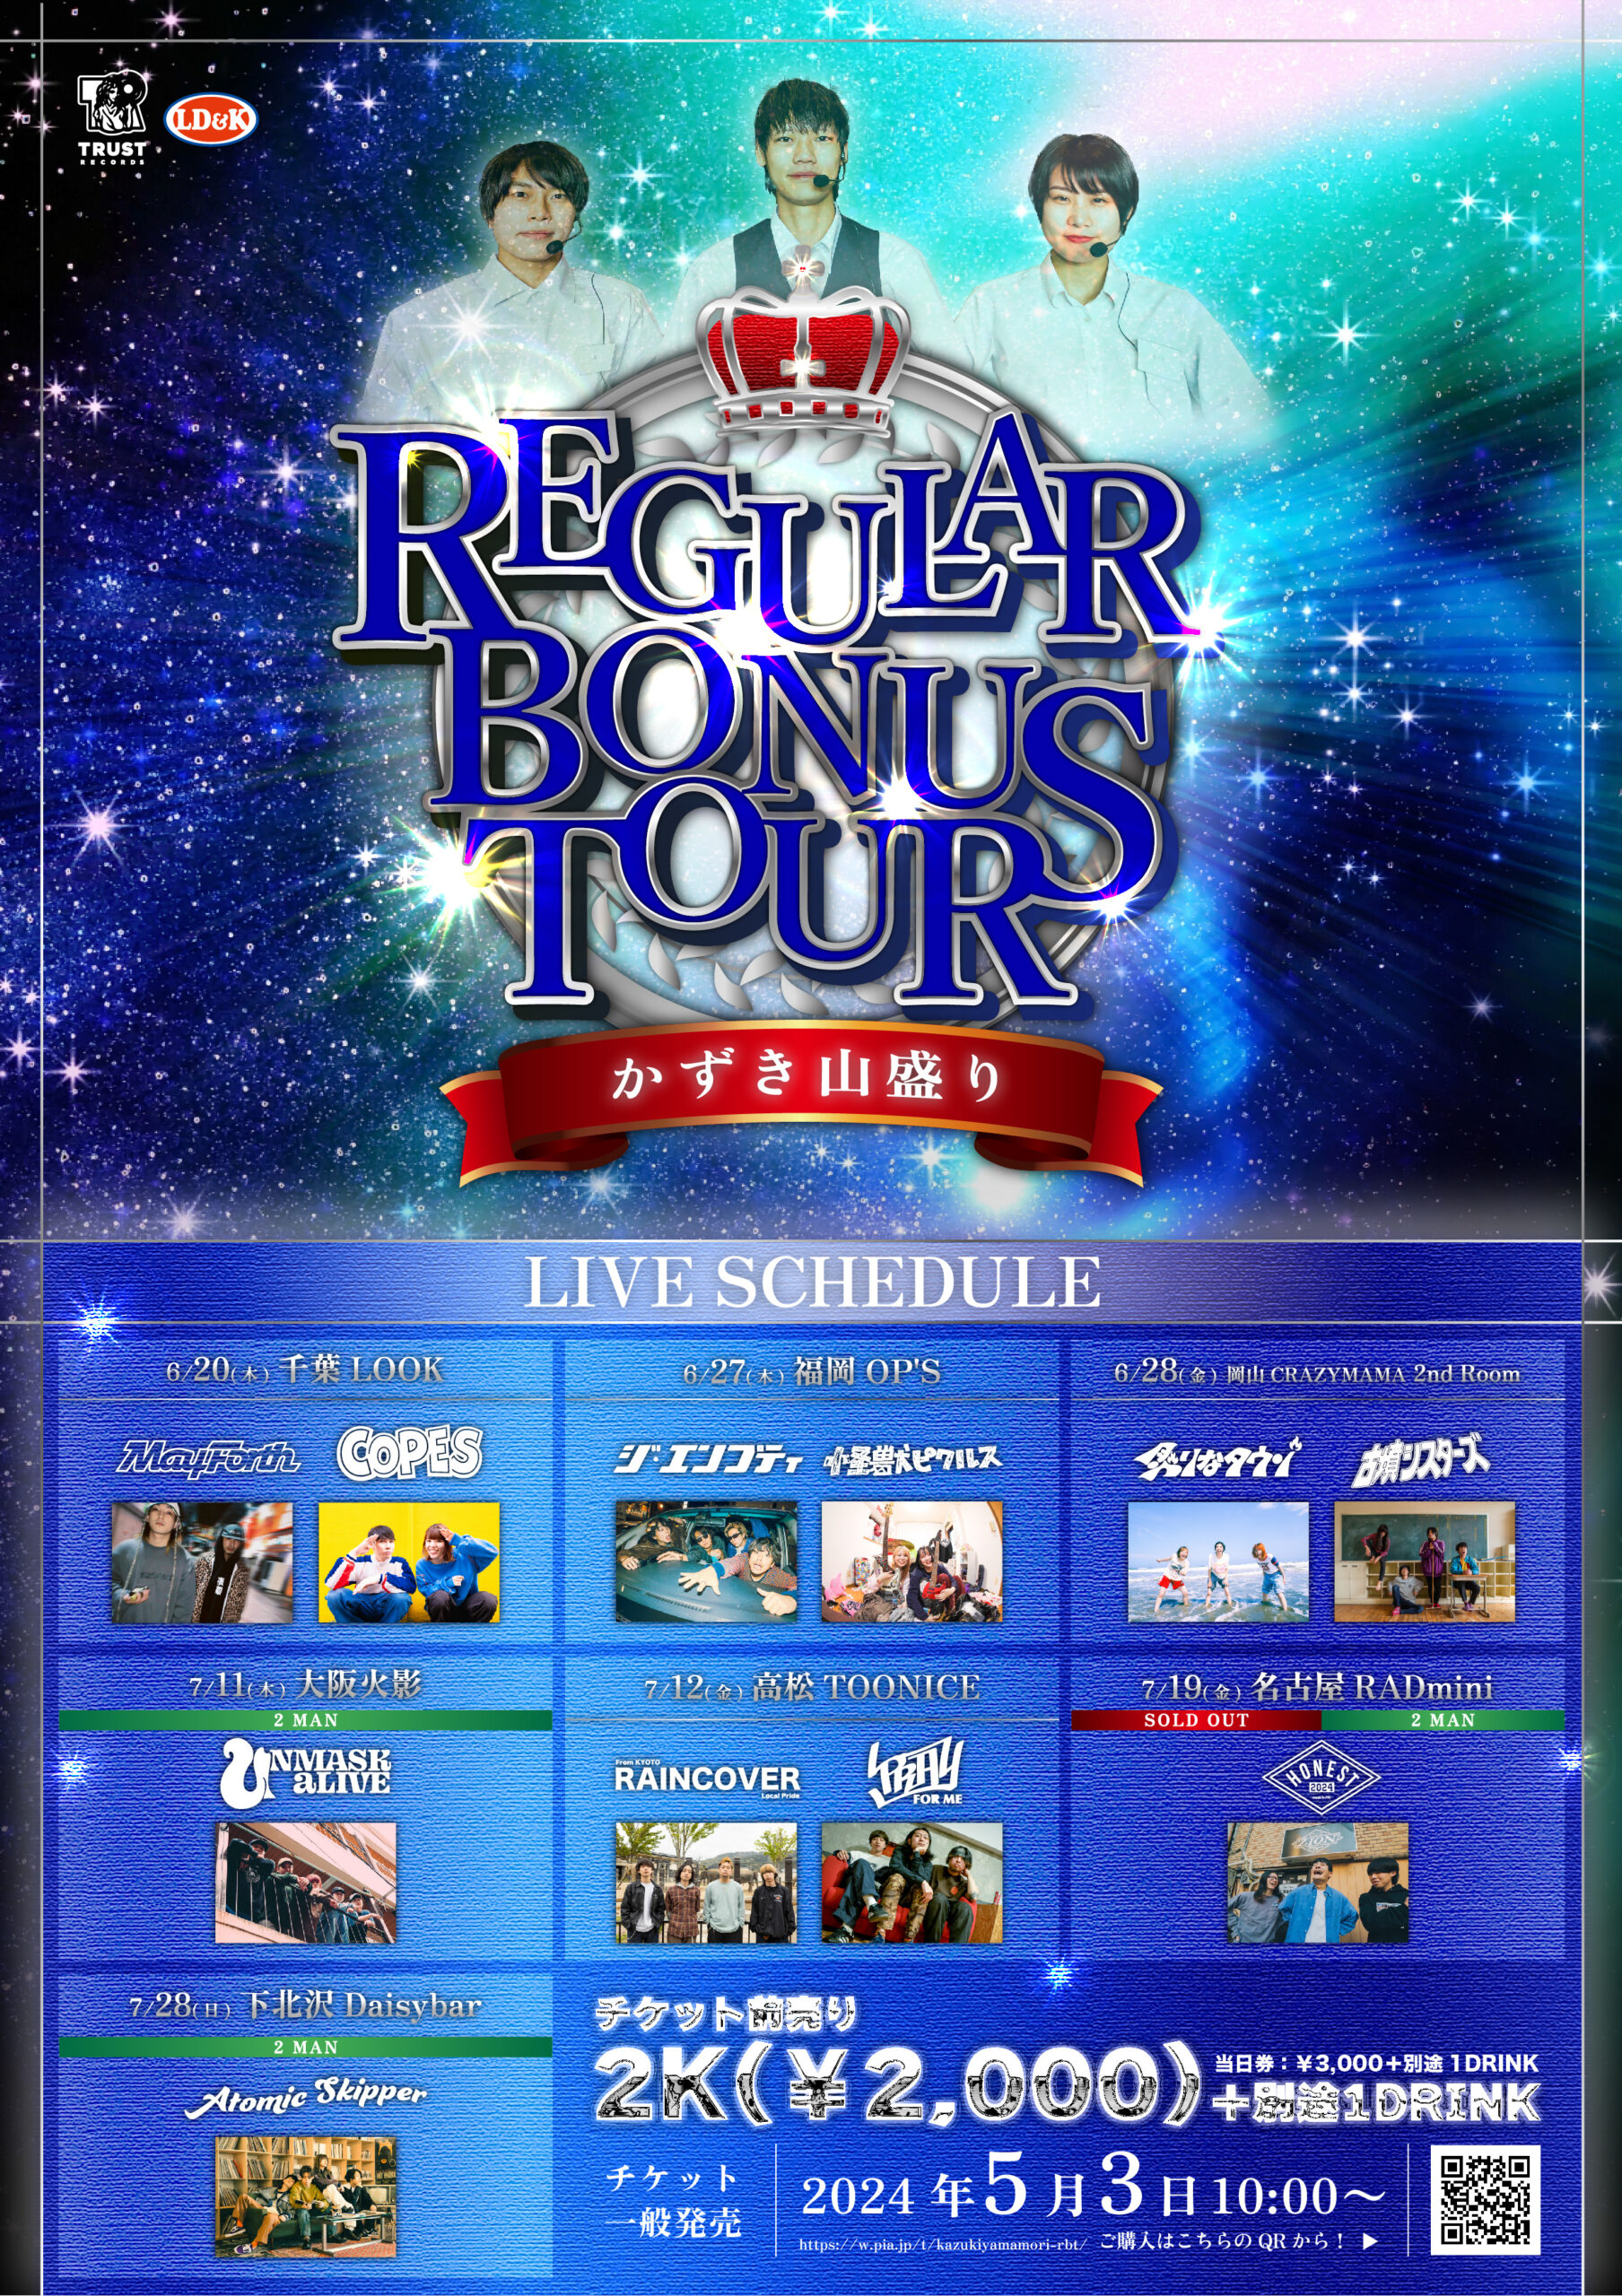 かずき山盛り "REGULAR BONUS TOUR"